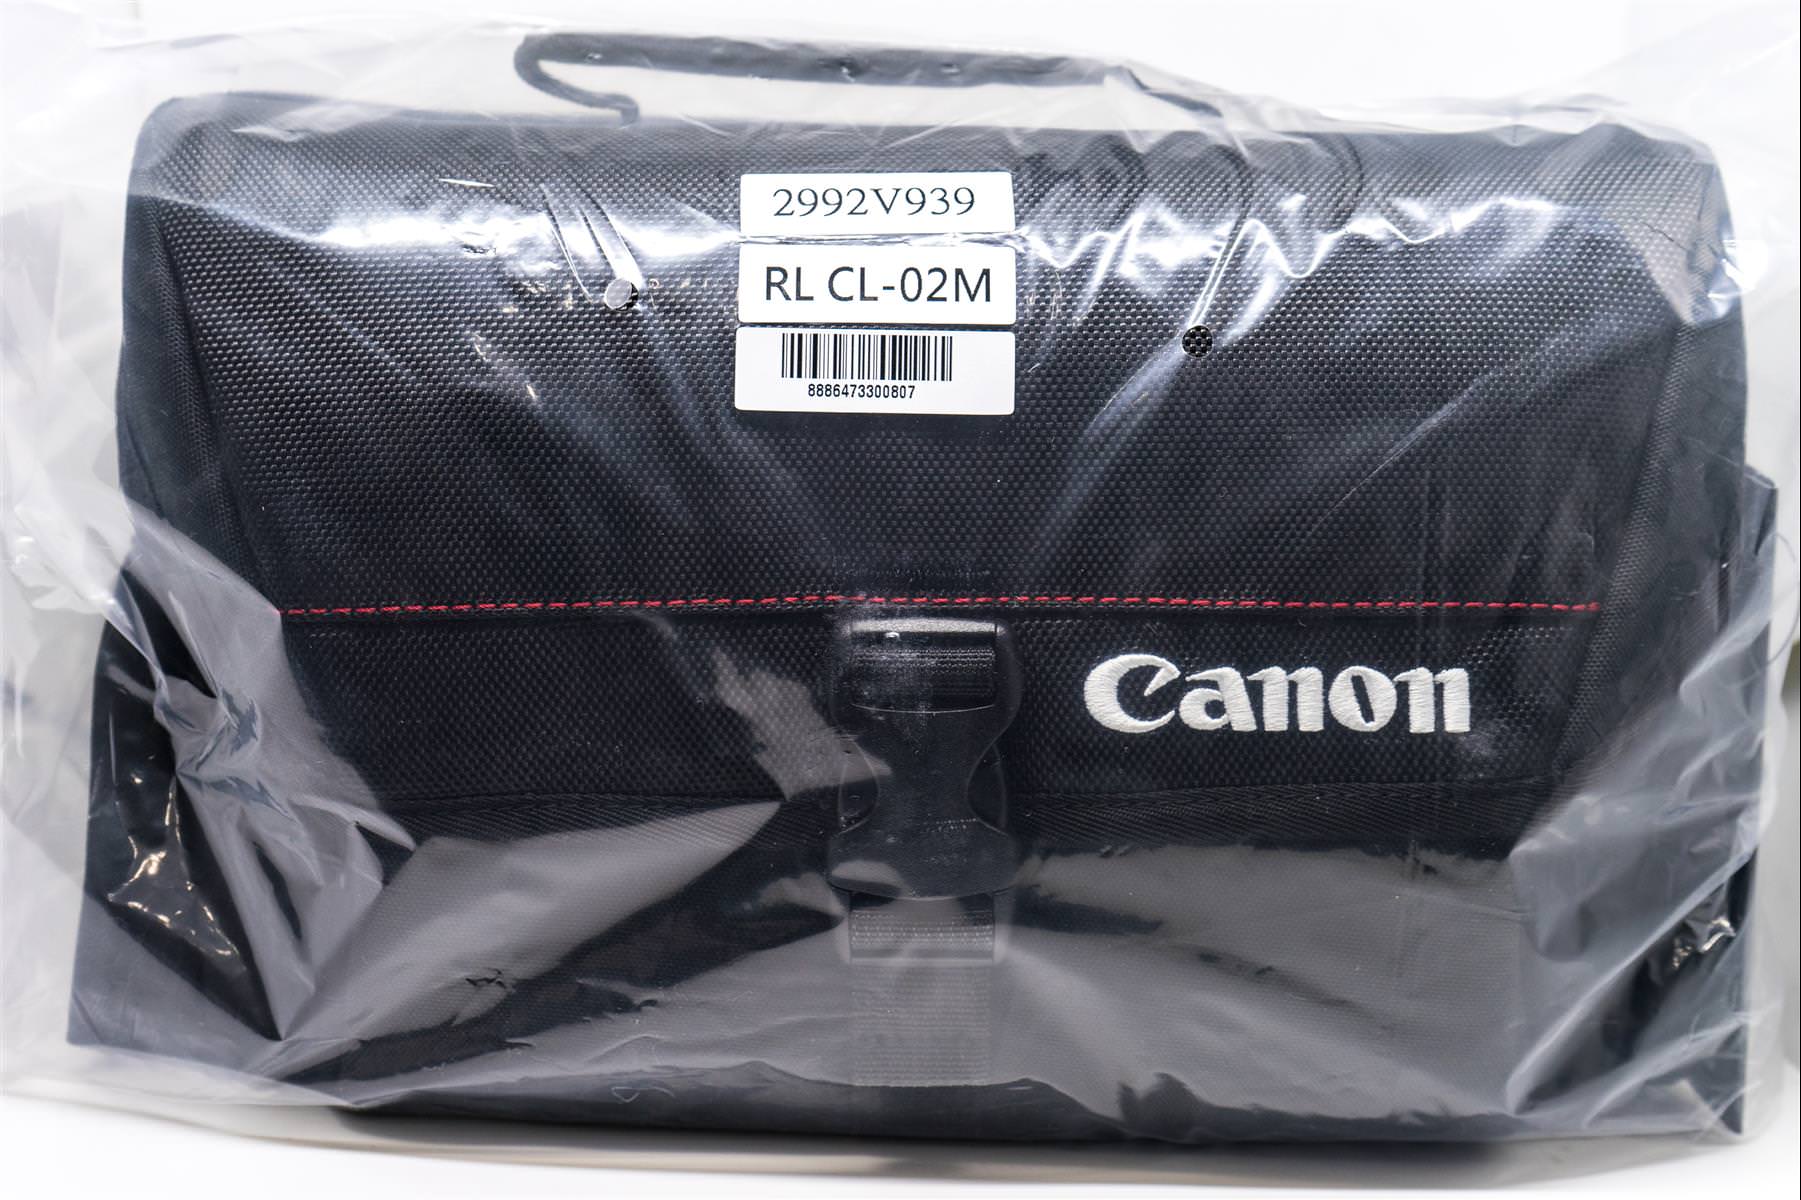 [玩攝影48] Canon 原廠相機包 RL CL-02M 開箱介紹